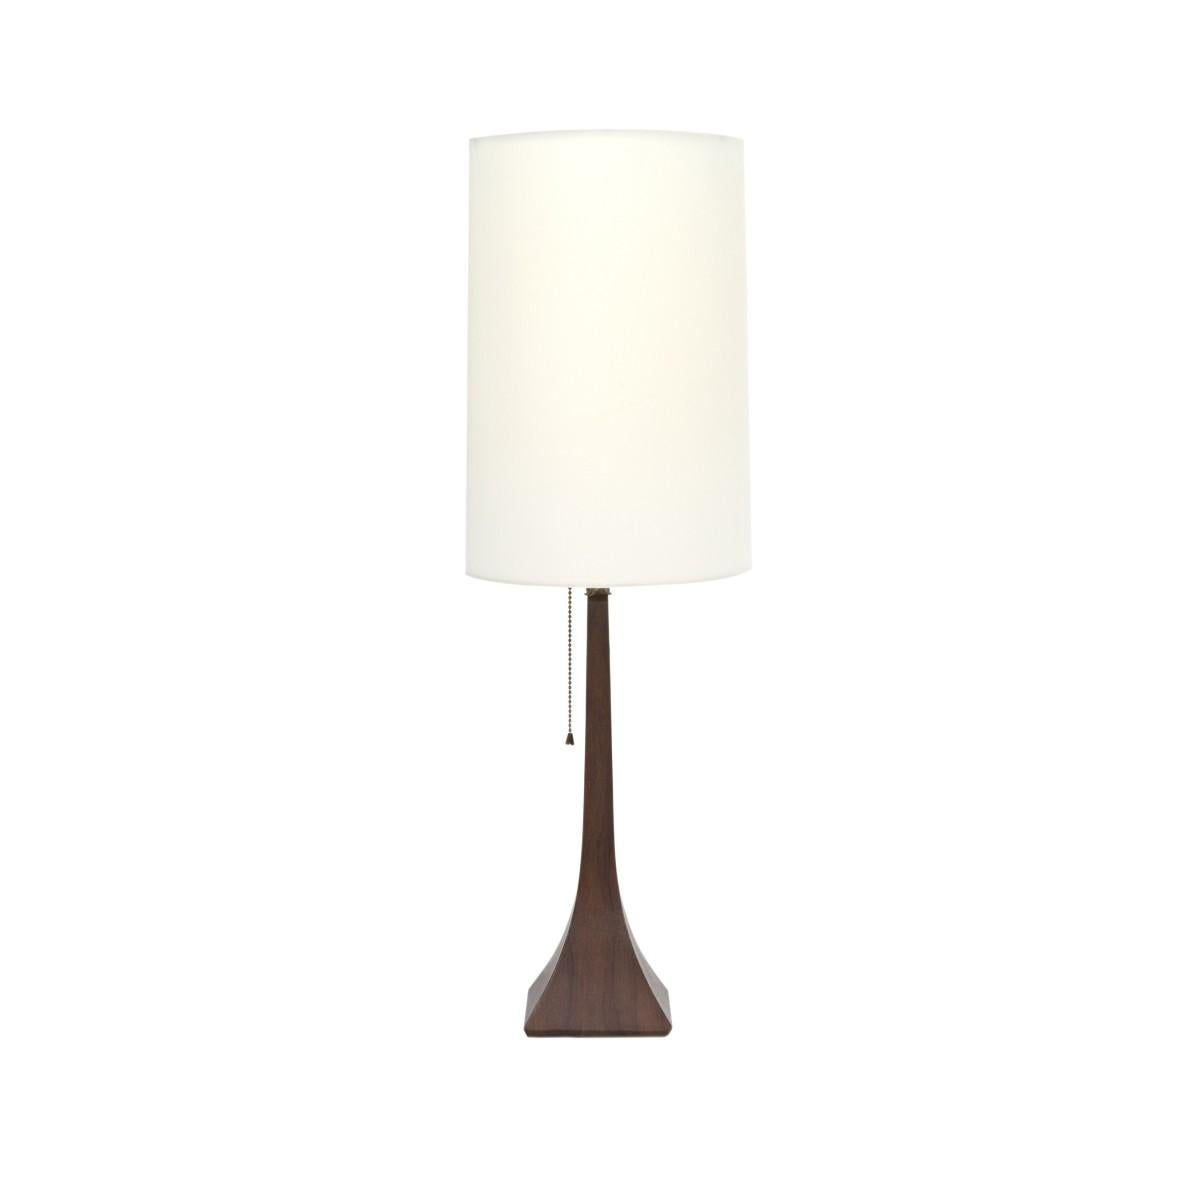 sleek table lamps